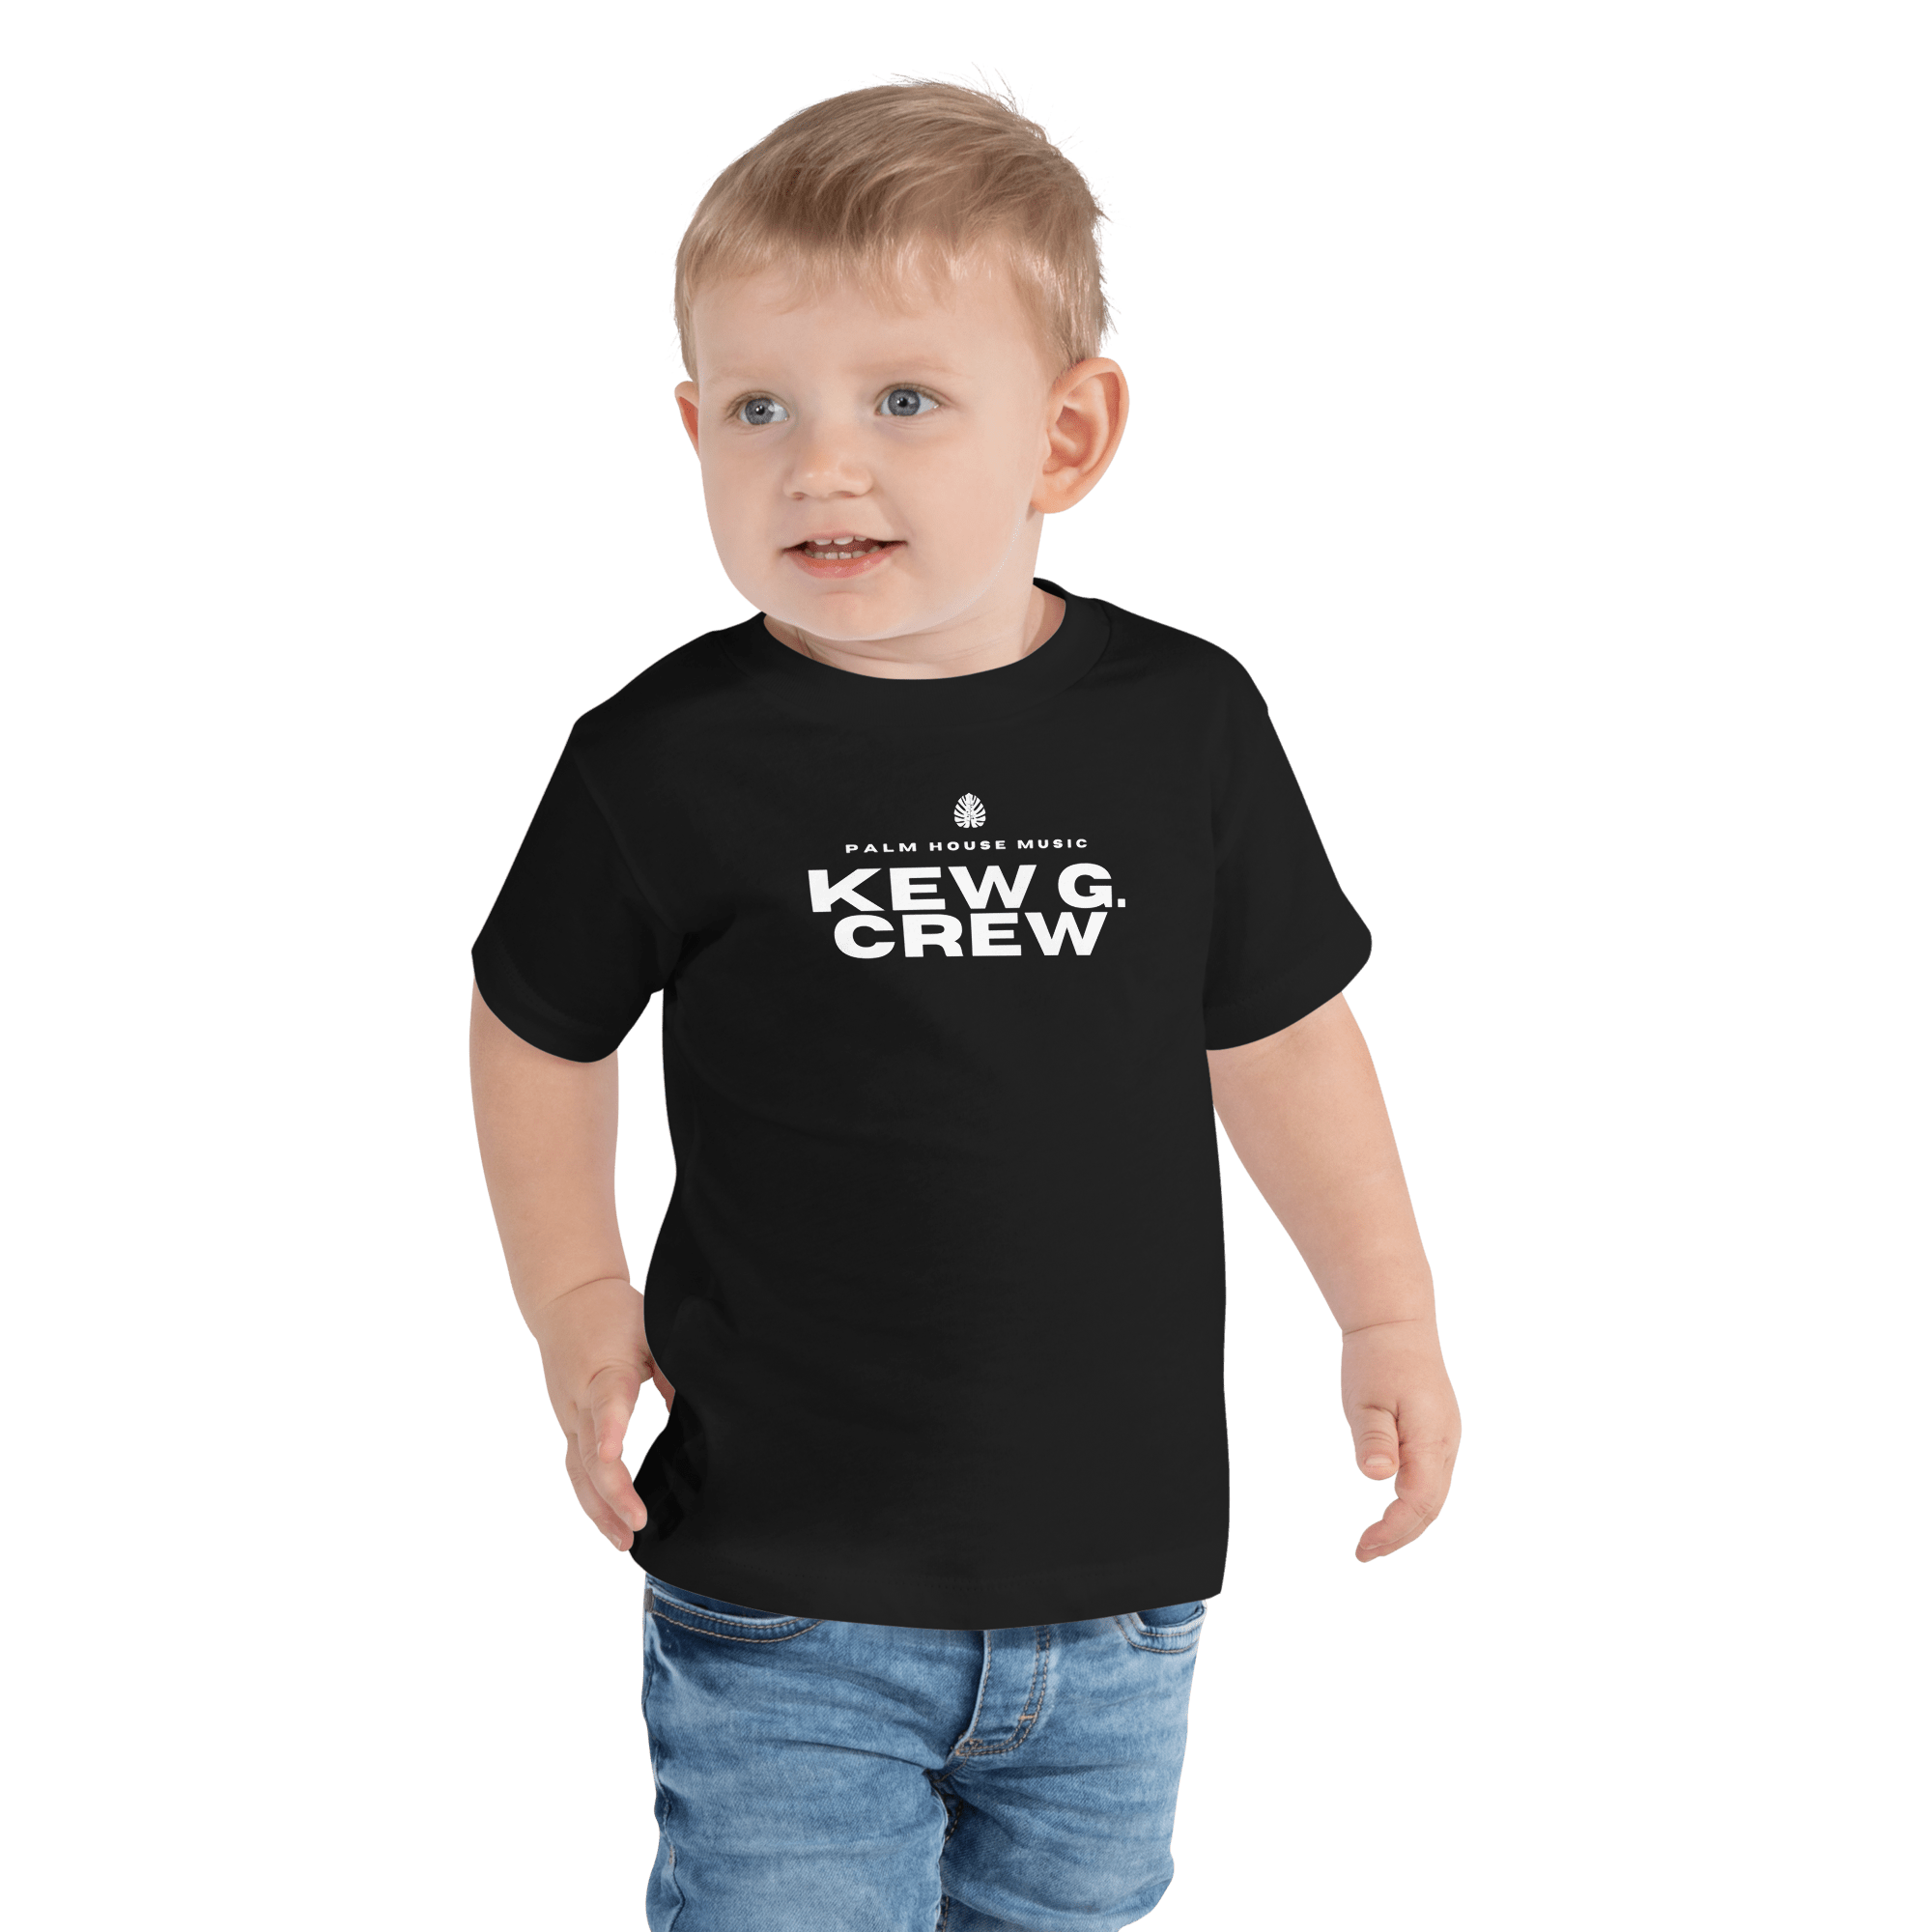 Kew G. Crew | Toddler T-Shirt Baby & Toddler Tops Jolly & Goode